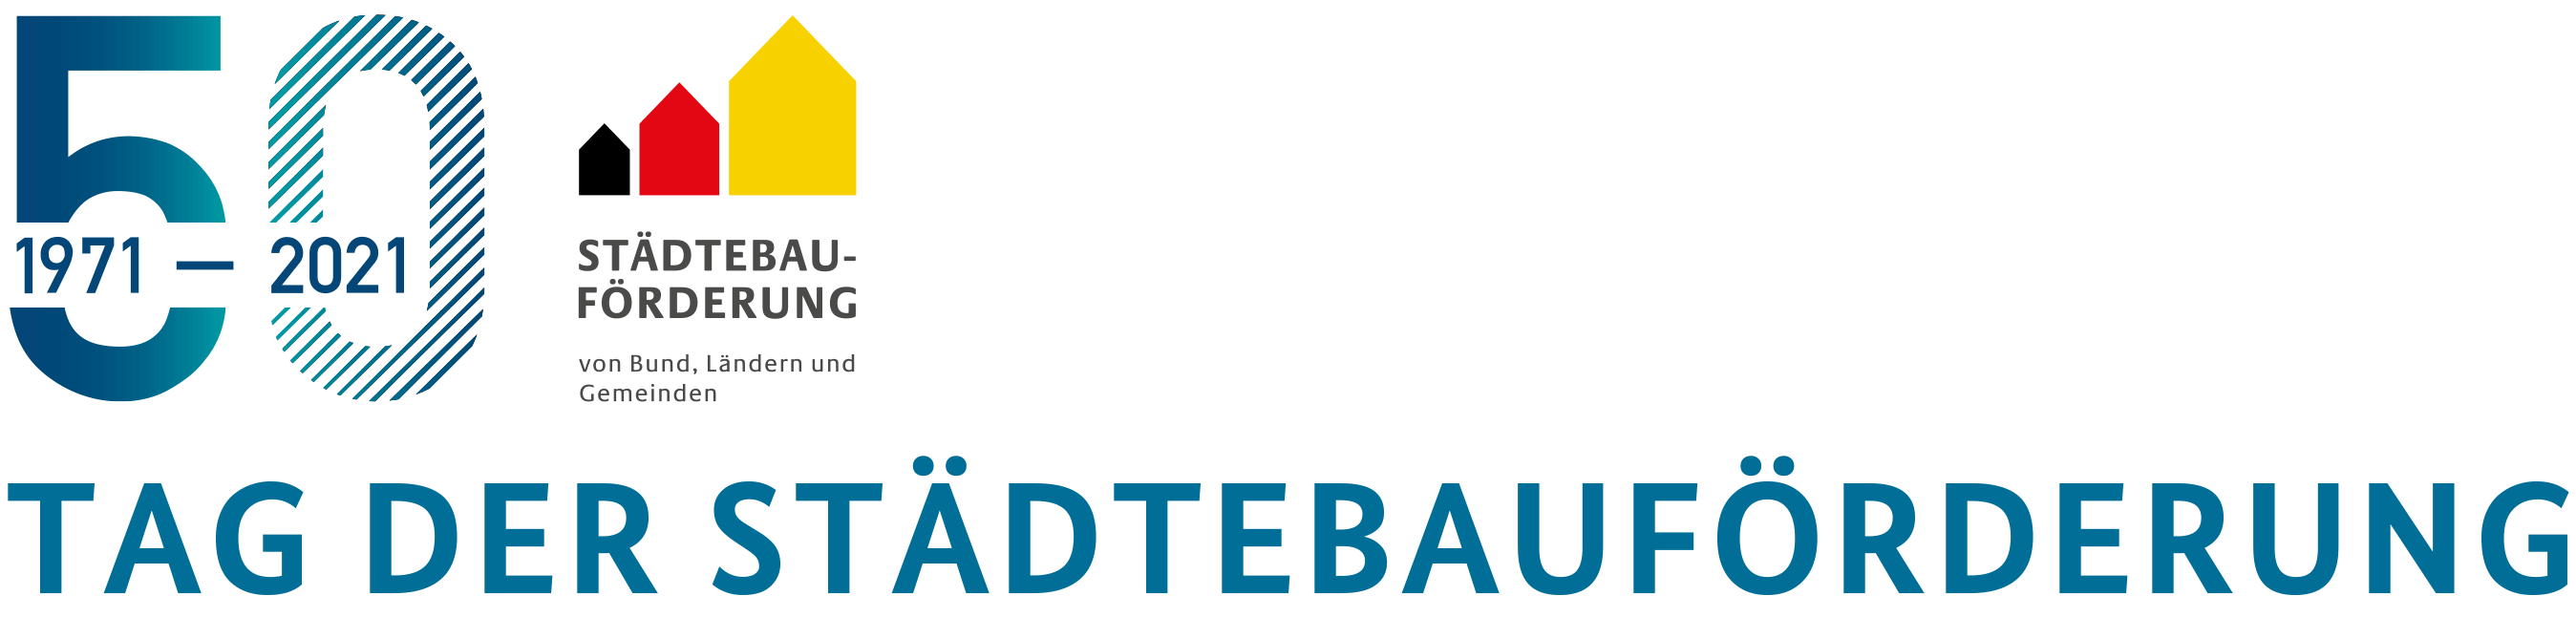 Logo 50 Jahre Städtebauförderung in Deutschland